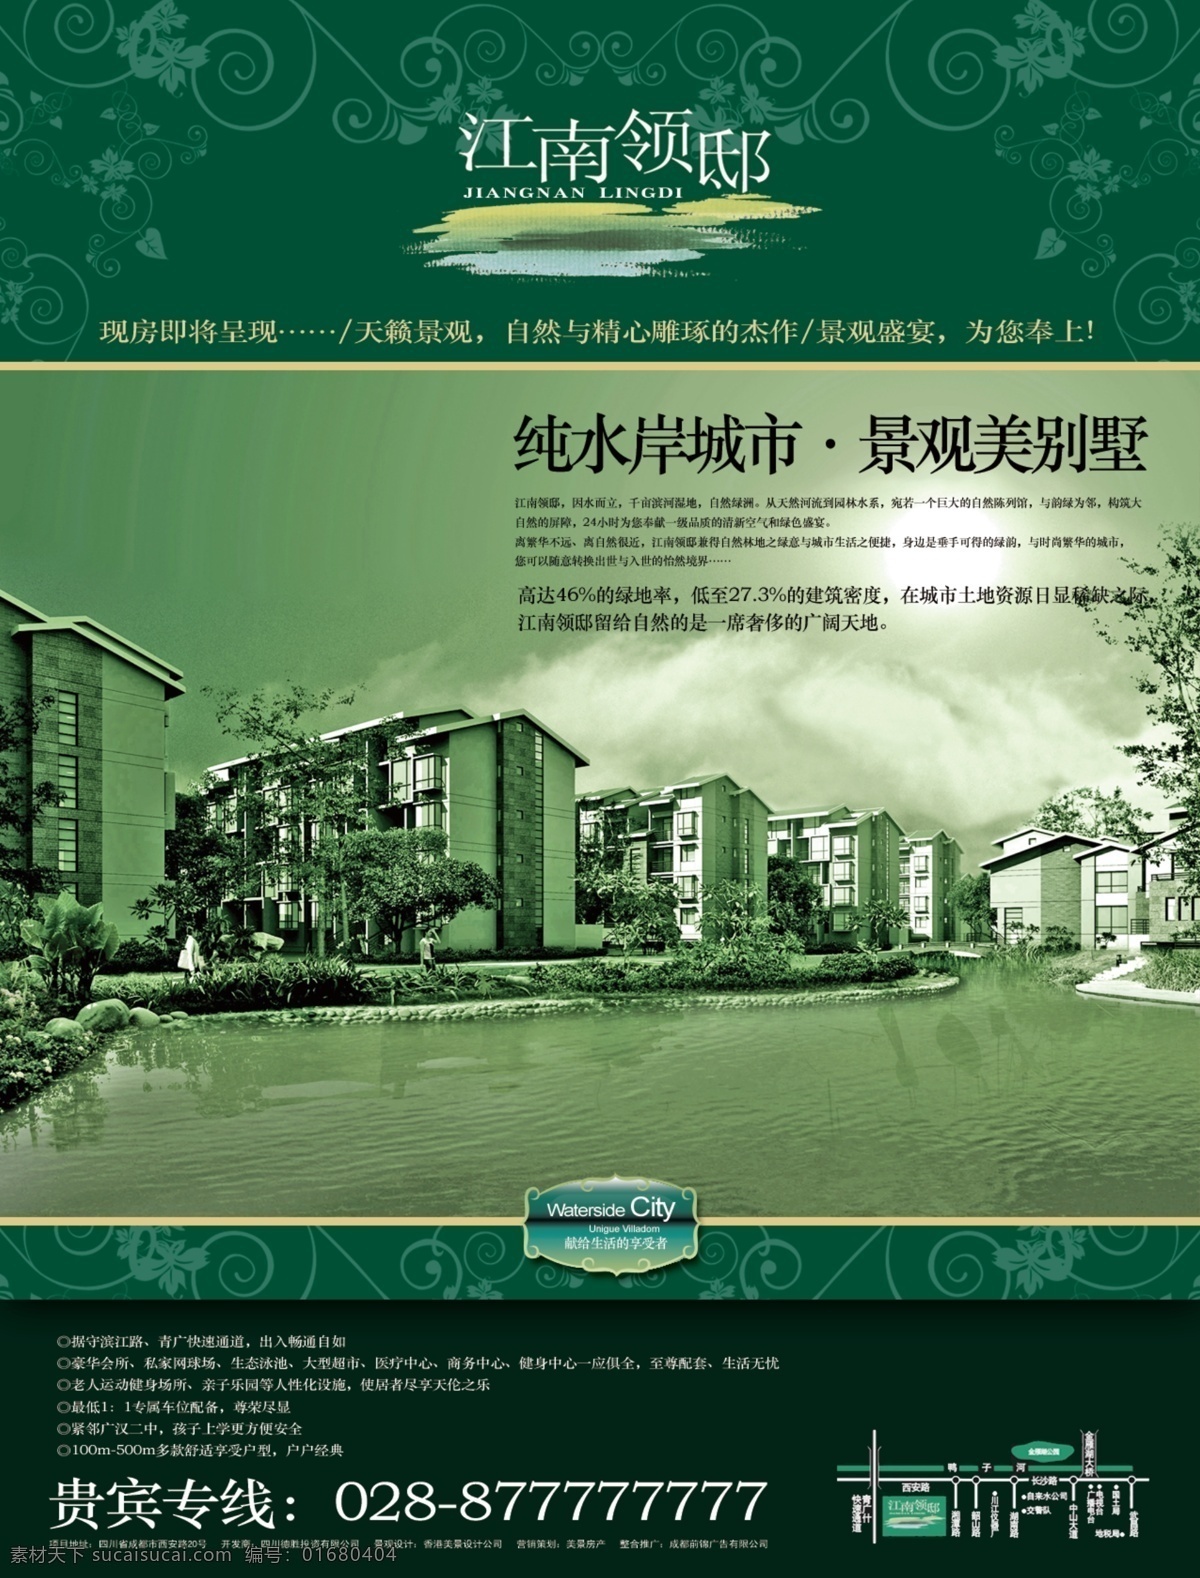 江南 领 邸 dm 地产广告设计 江南风 老宅子 板式 绿色